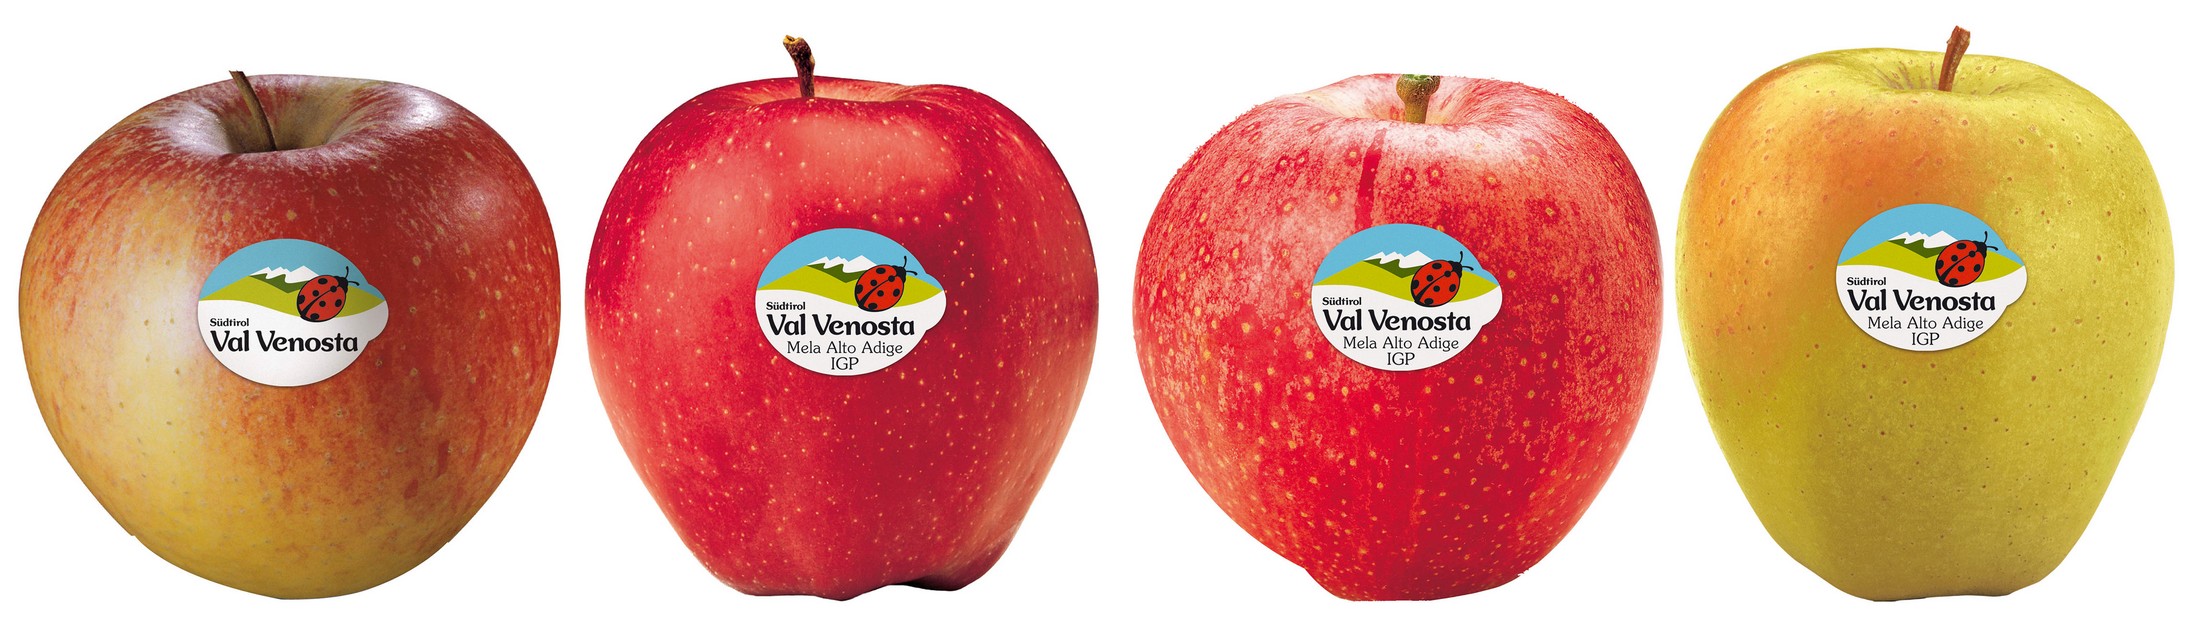 Manzanas Val Venosta, el sabor de la naturaleza